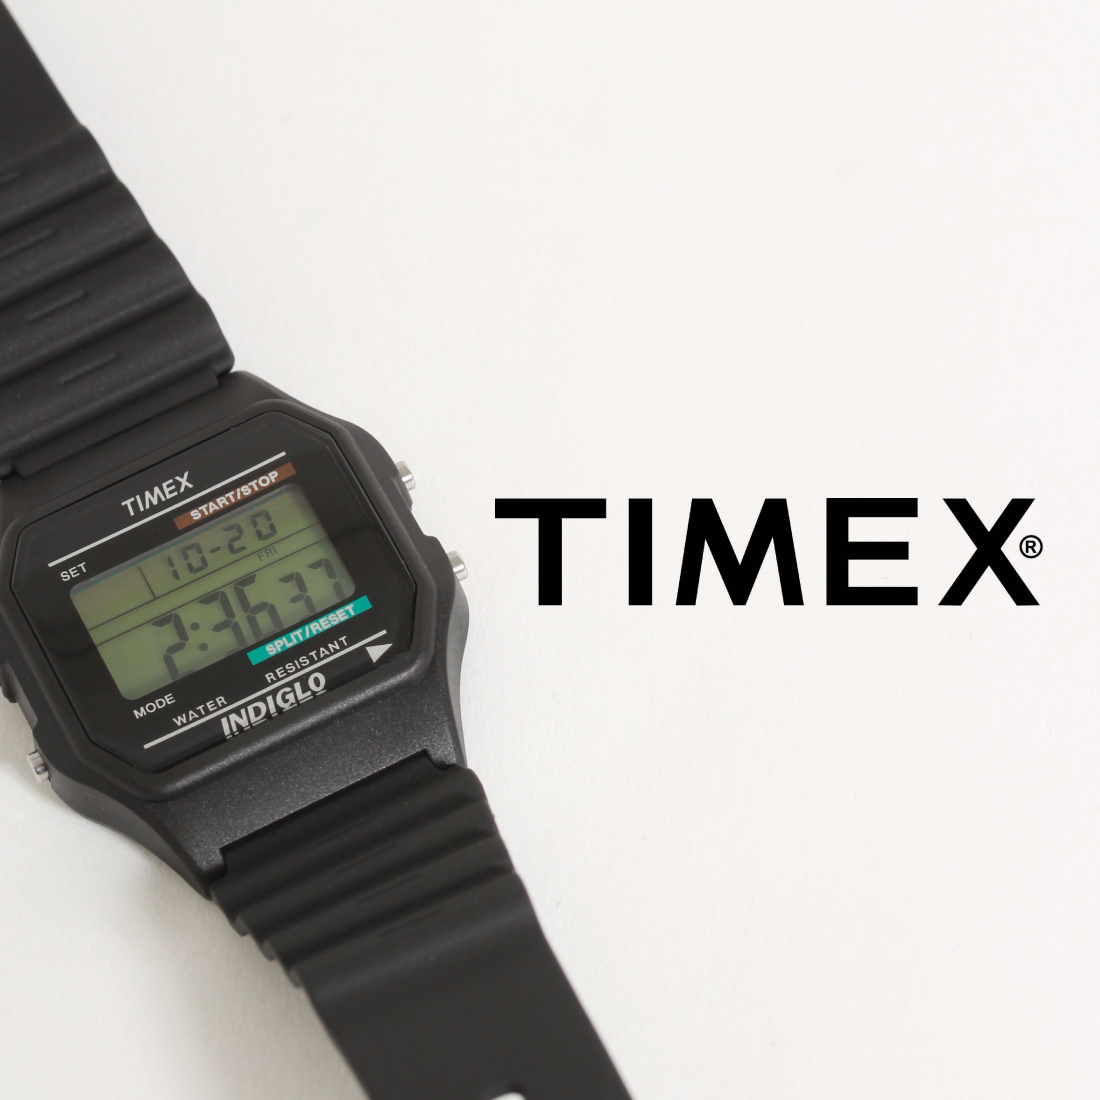 TIMEX,タイメックス,クラシックデジタル,T75961,日本限定,jeansfactory,ジーンズファクトリー,通販,再入荷